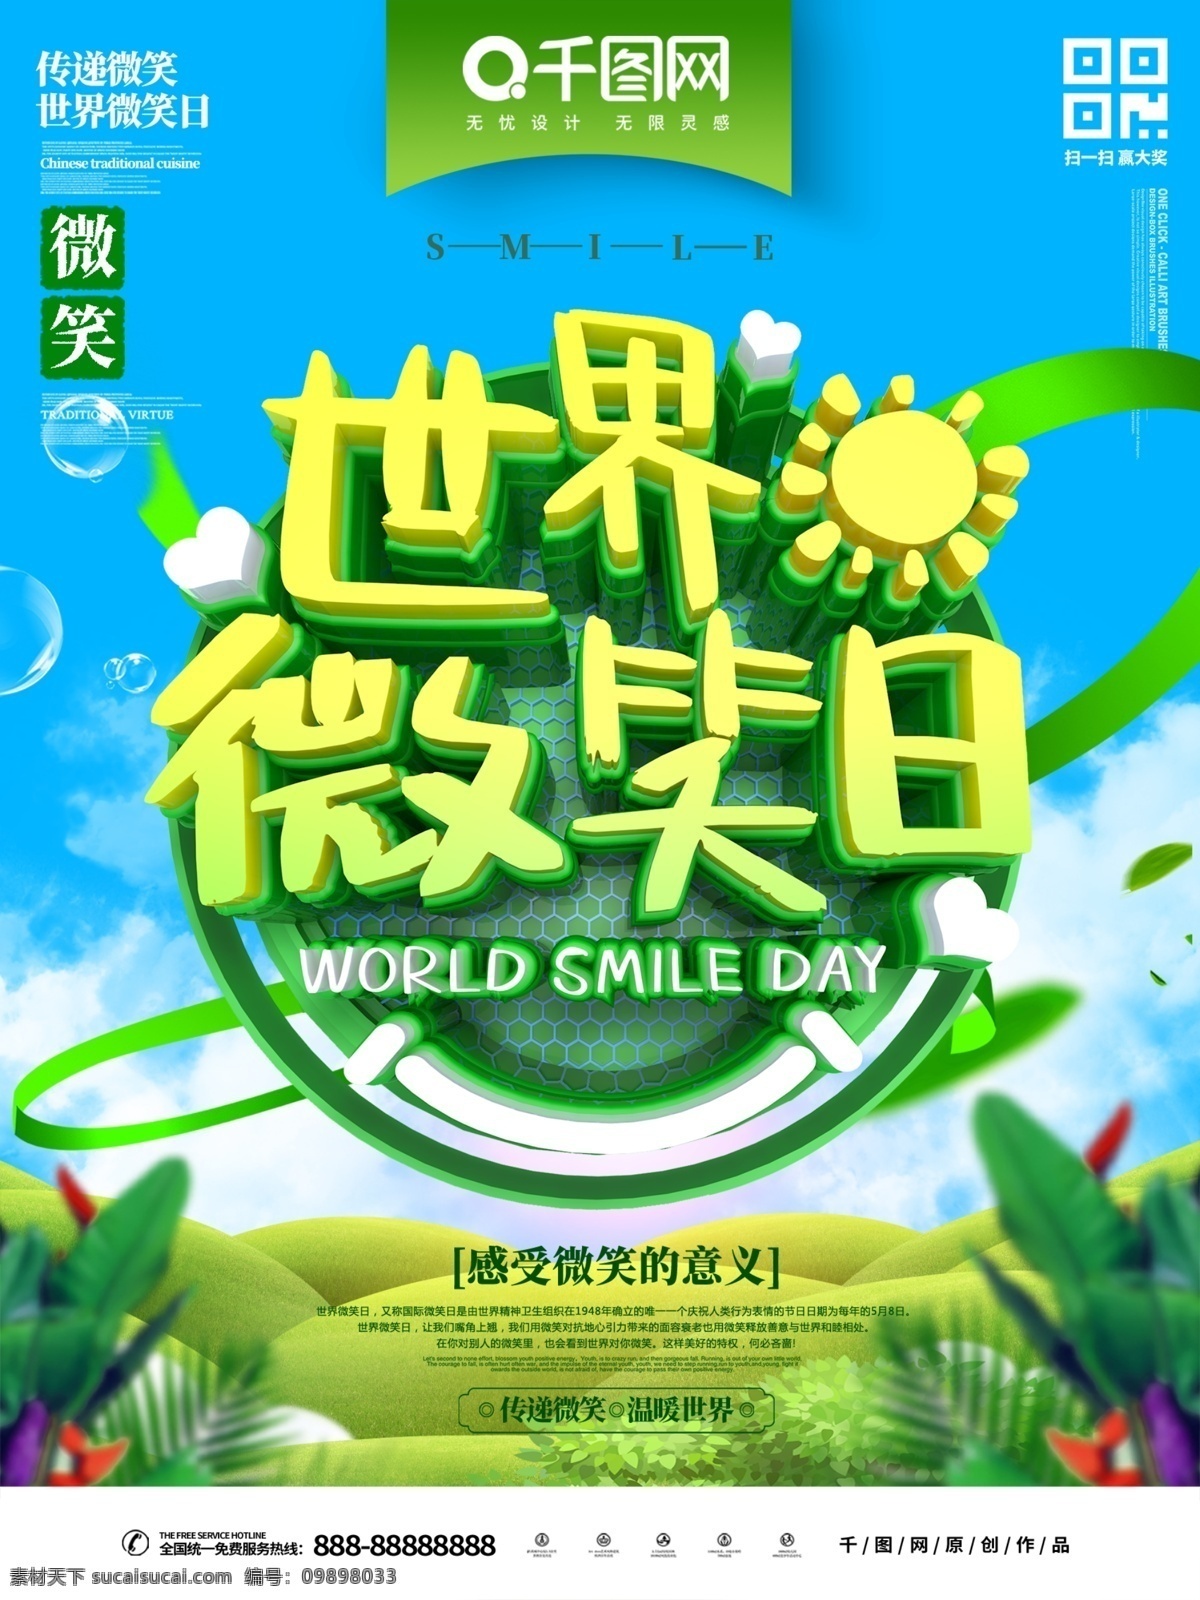 c4d 世界 微笑 日 主题 海报 世界微笑日 节日 国际 传递微笑